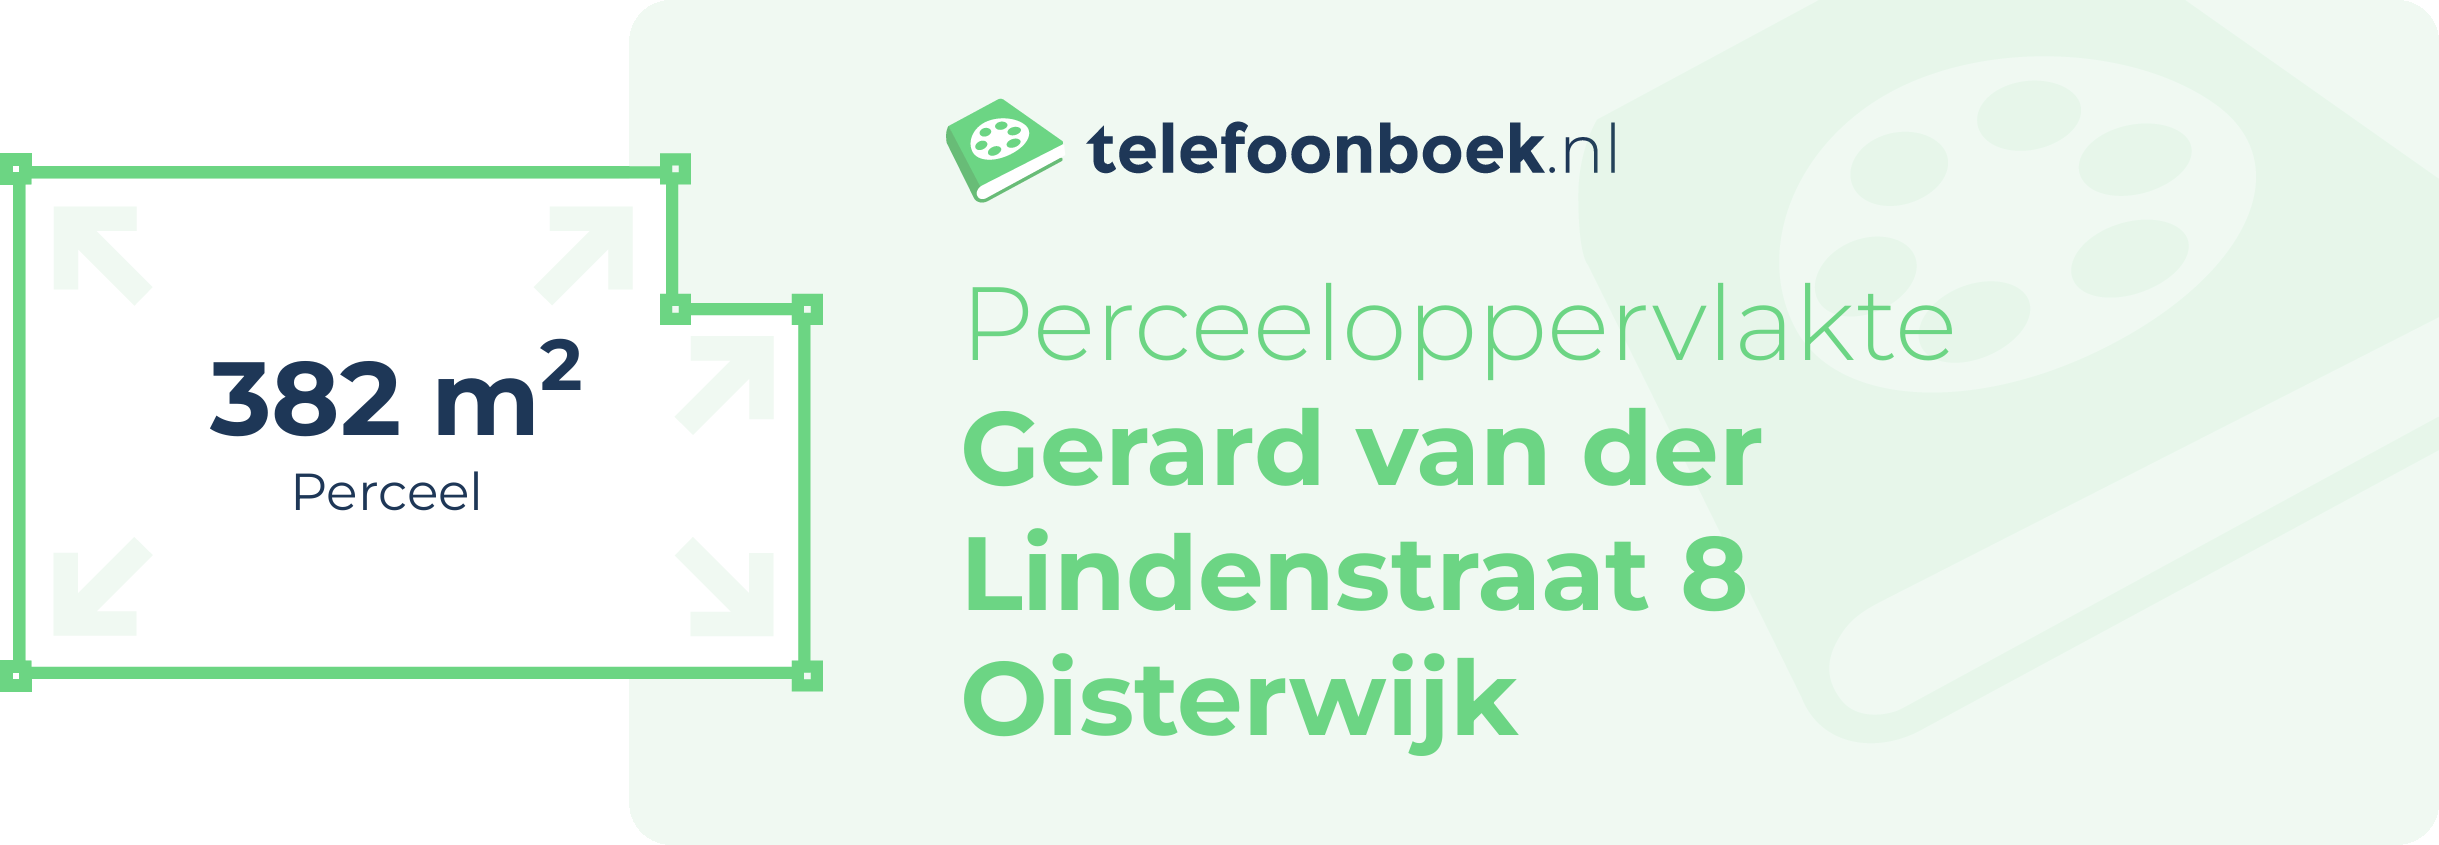 Perceeloppervlakte Gerard Van Der Lindenstraat 8 Oisterwijk